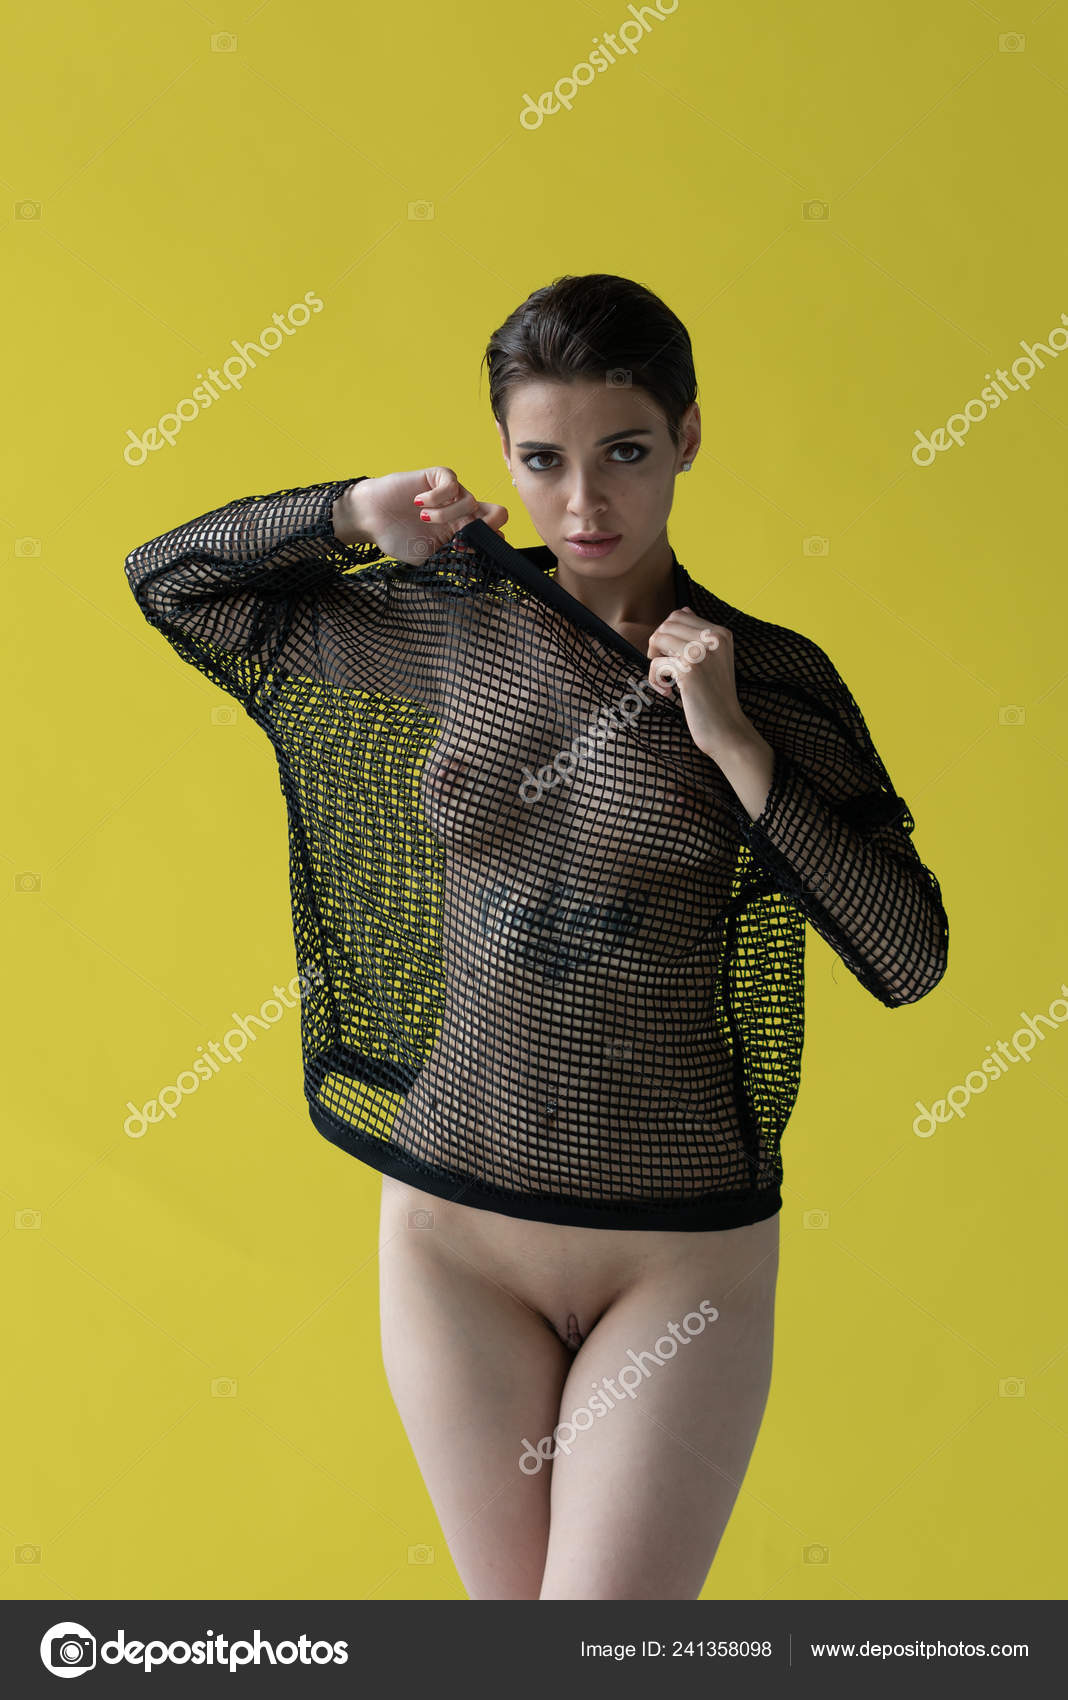 https://st4n.depositphotos.com/10086424/24135/i/1600/depositphotos_241358098-stock-photo-young-beautiful-girl-posing-nude.jpg